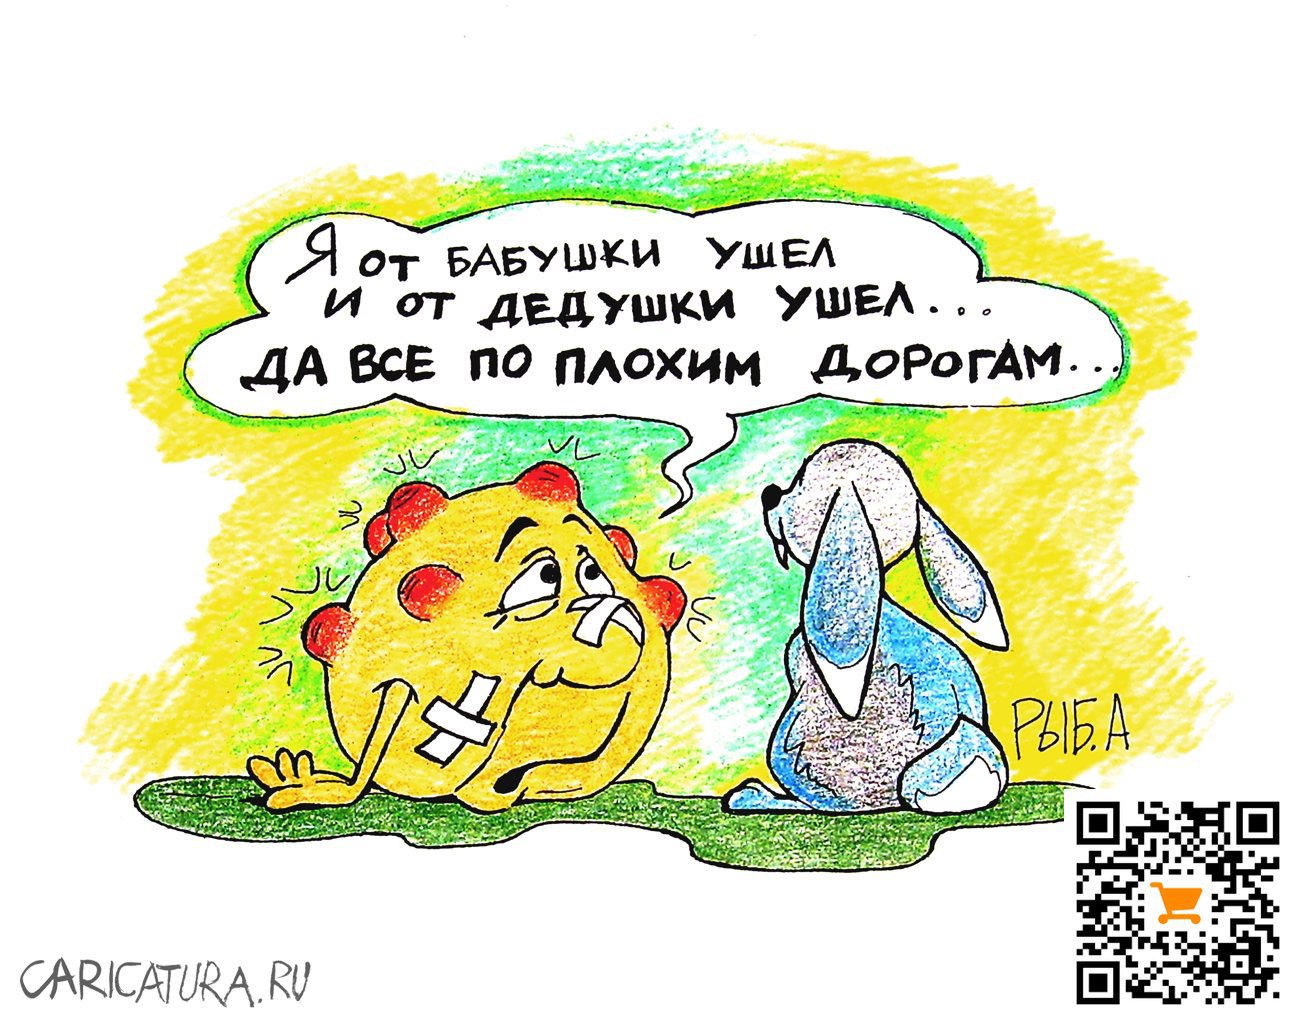 Карикатура "Колобок", Ксения Шведова